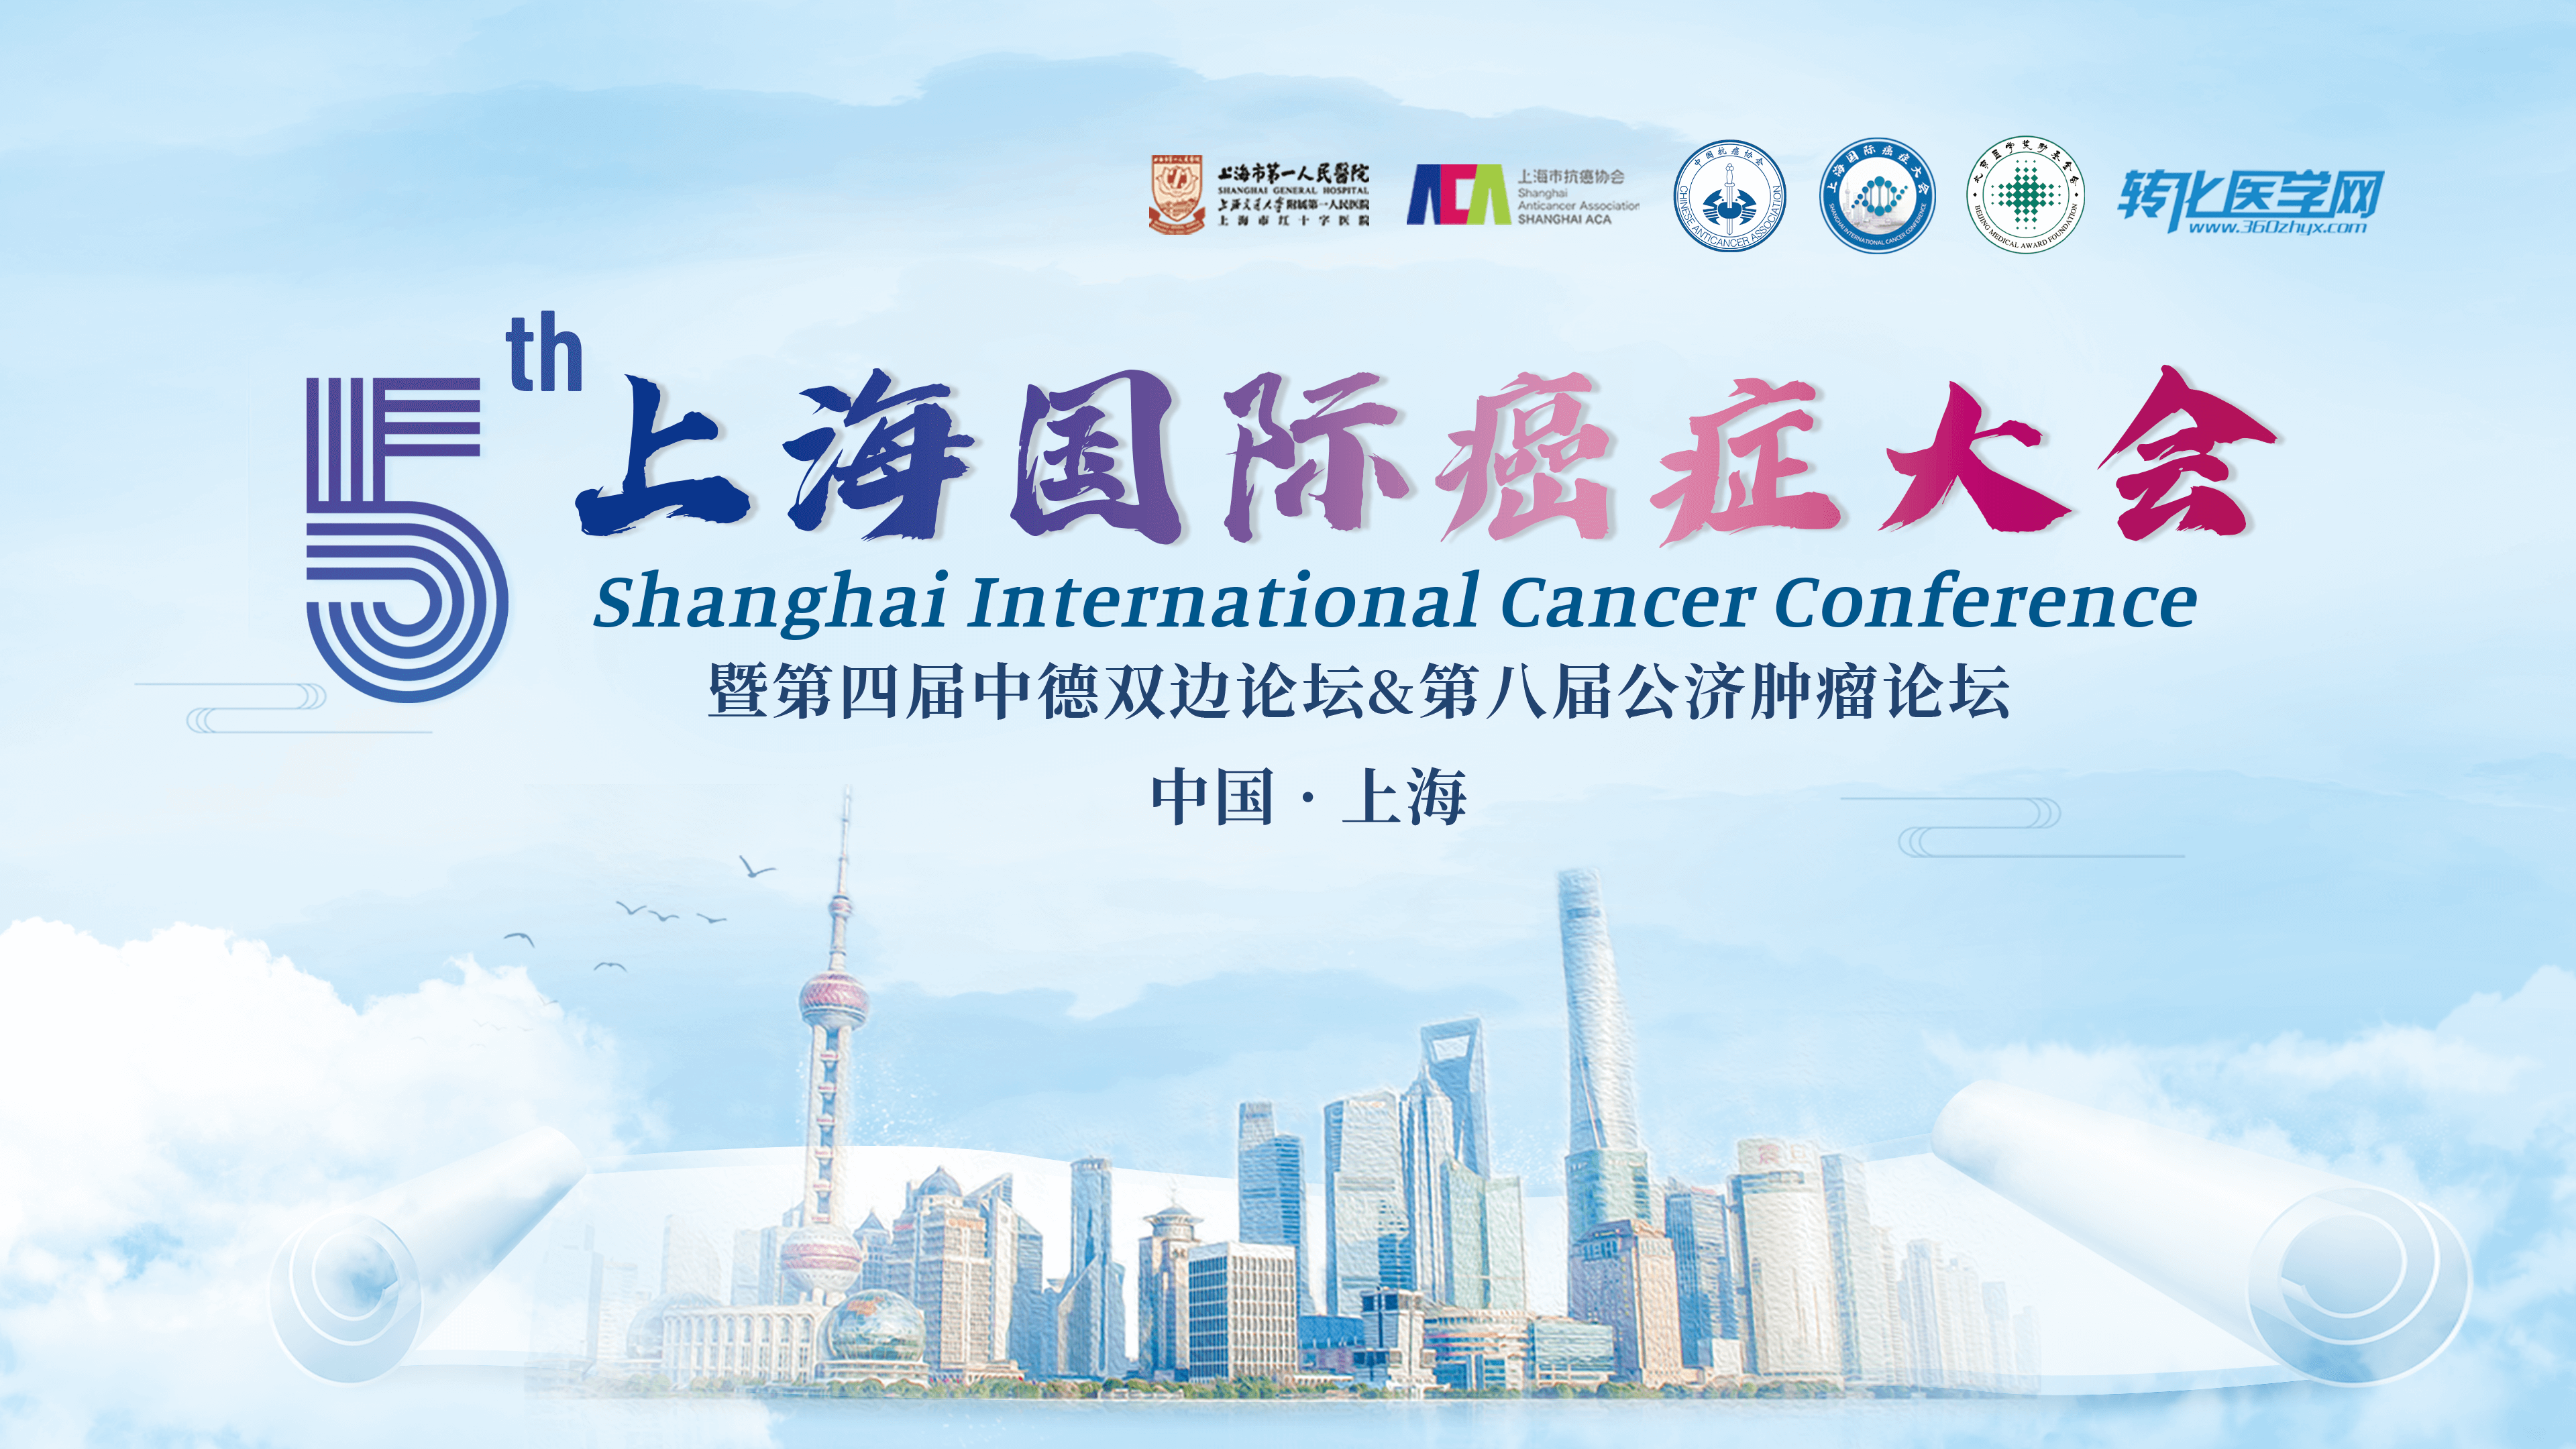 会议通知 | 恒瑞医药邀您共赴第五届上海国际癌症大会